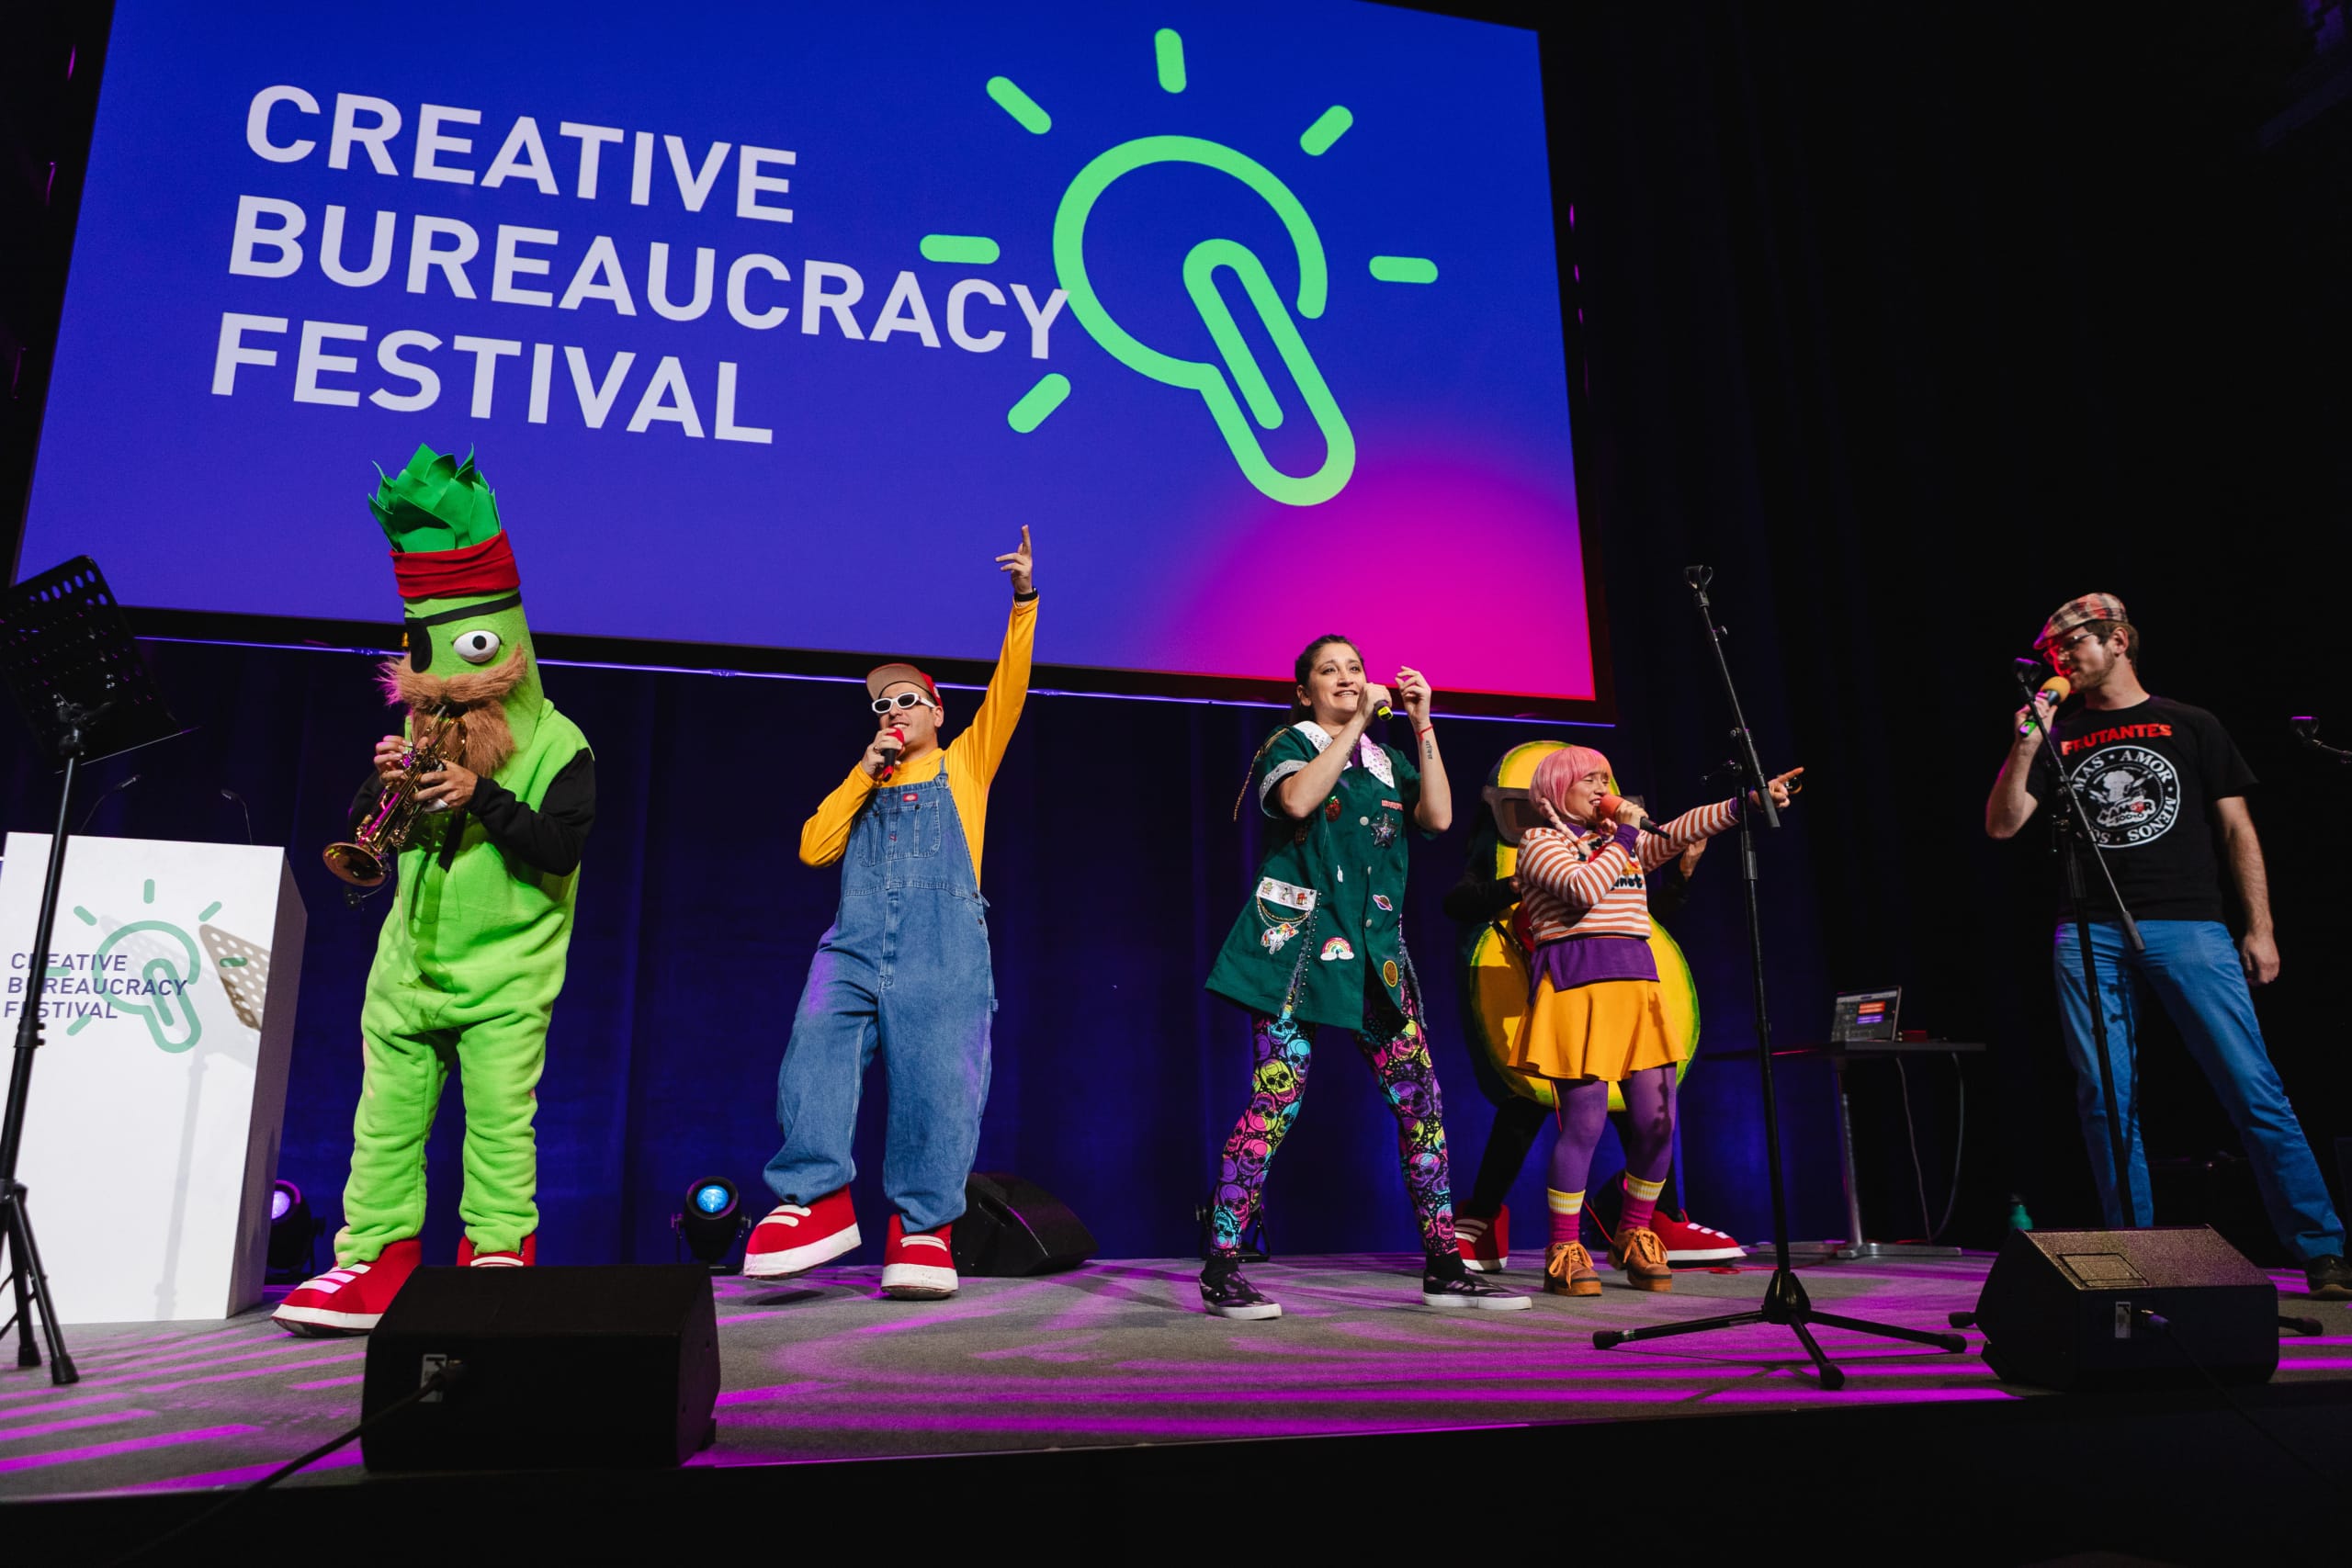 Das Bild zeigt eine Bühne des Creative Bureaucracy Festival auf der kostümierte Menschen Musik machen.